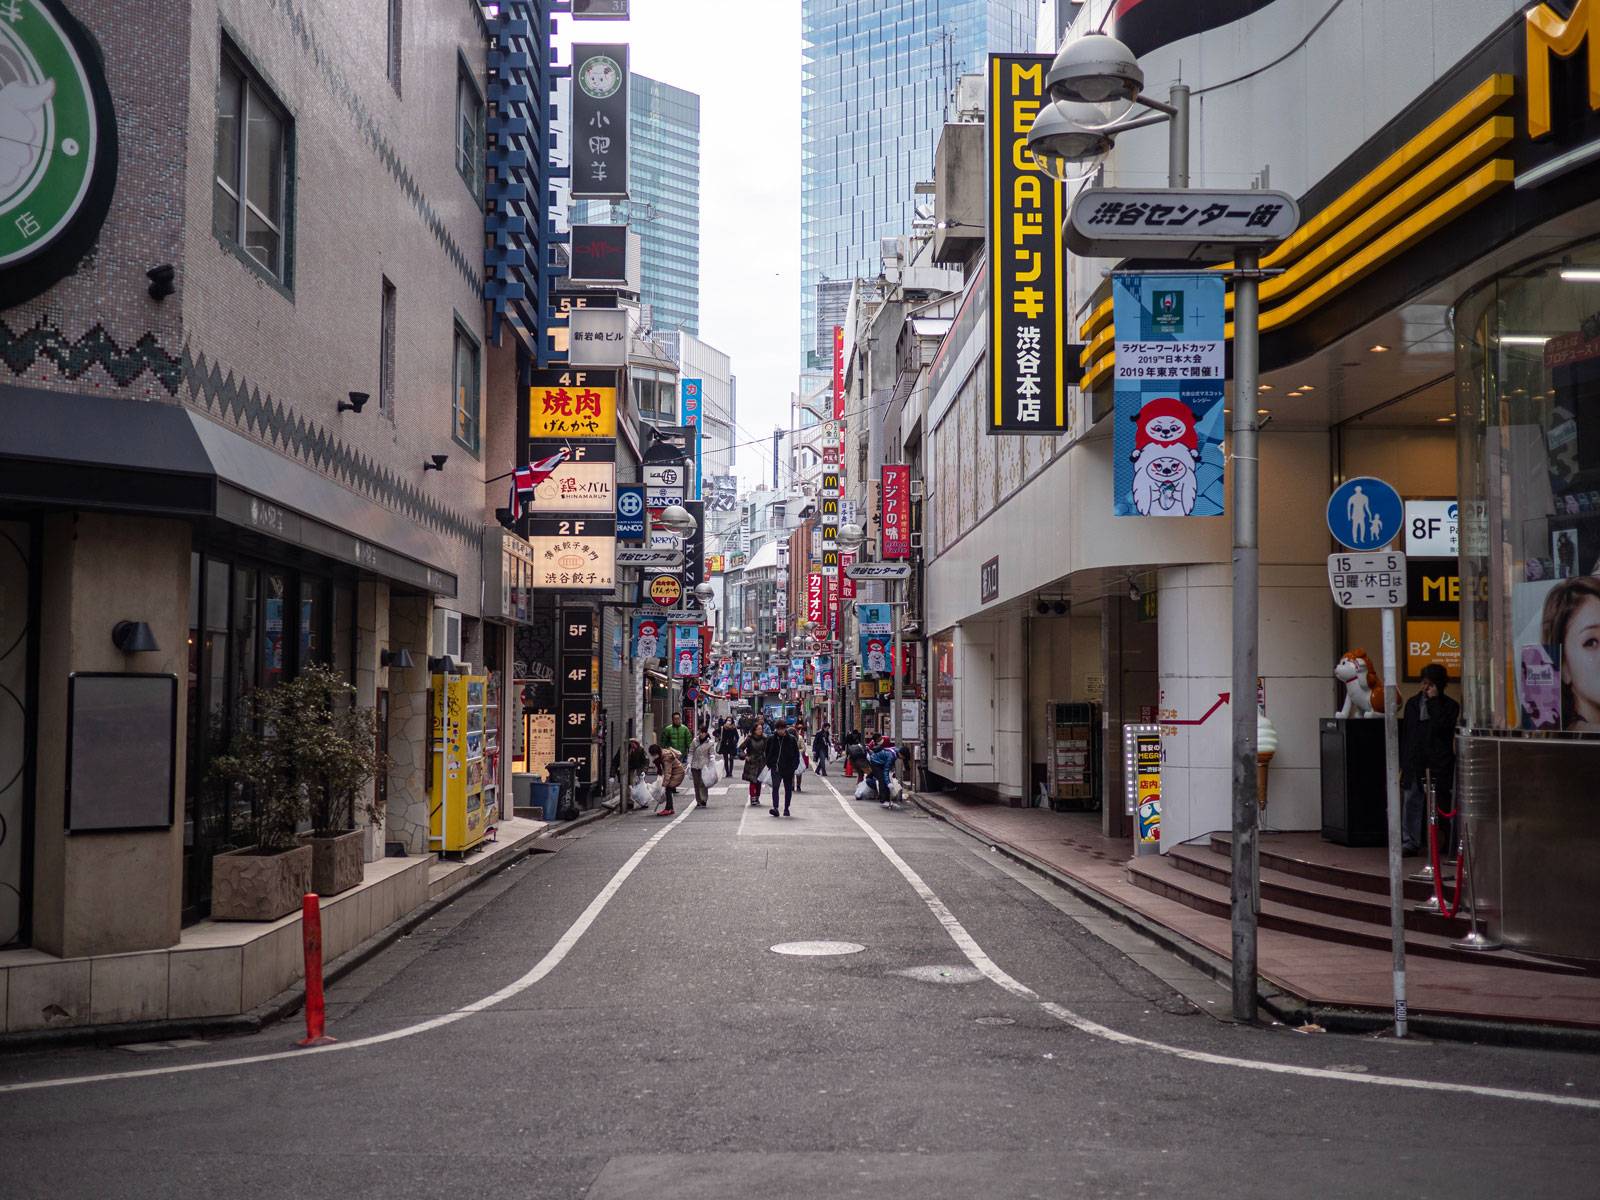 Walking through Shibuya